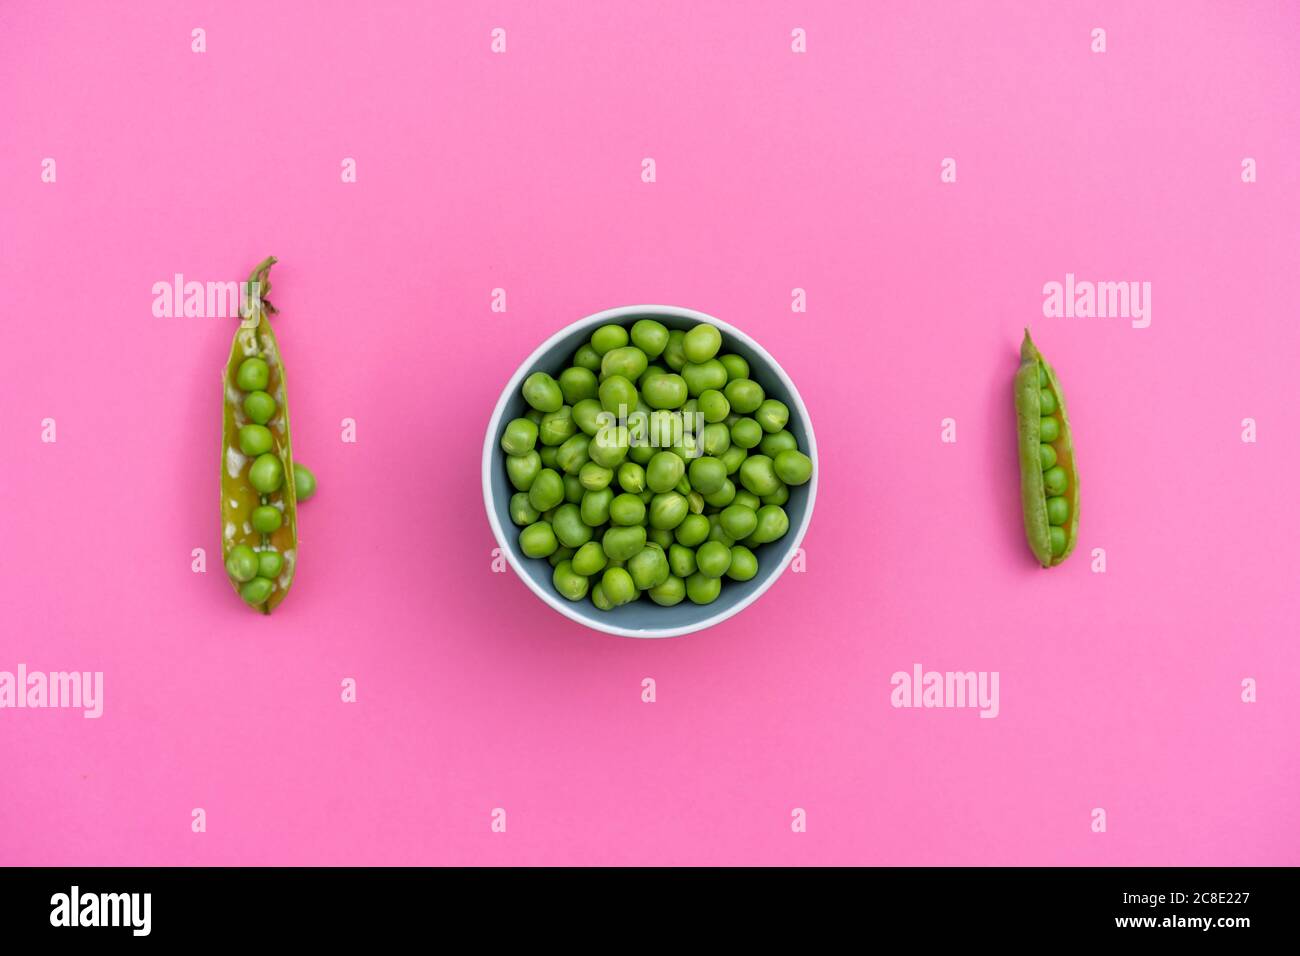 https://c8.alamy.com/comp/2C8E227/studio-shot-of-two-green-pea-pods-and-bowl-of-green-peas-2C8E227.jpg